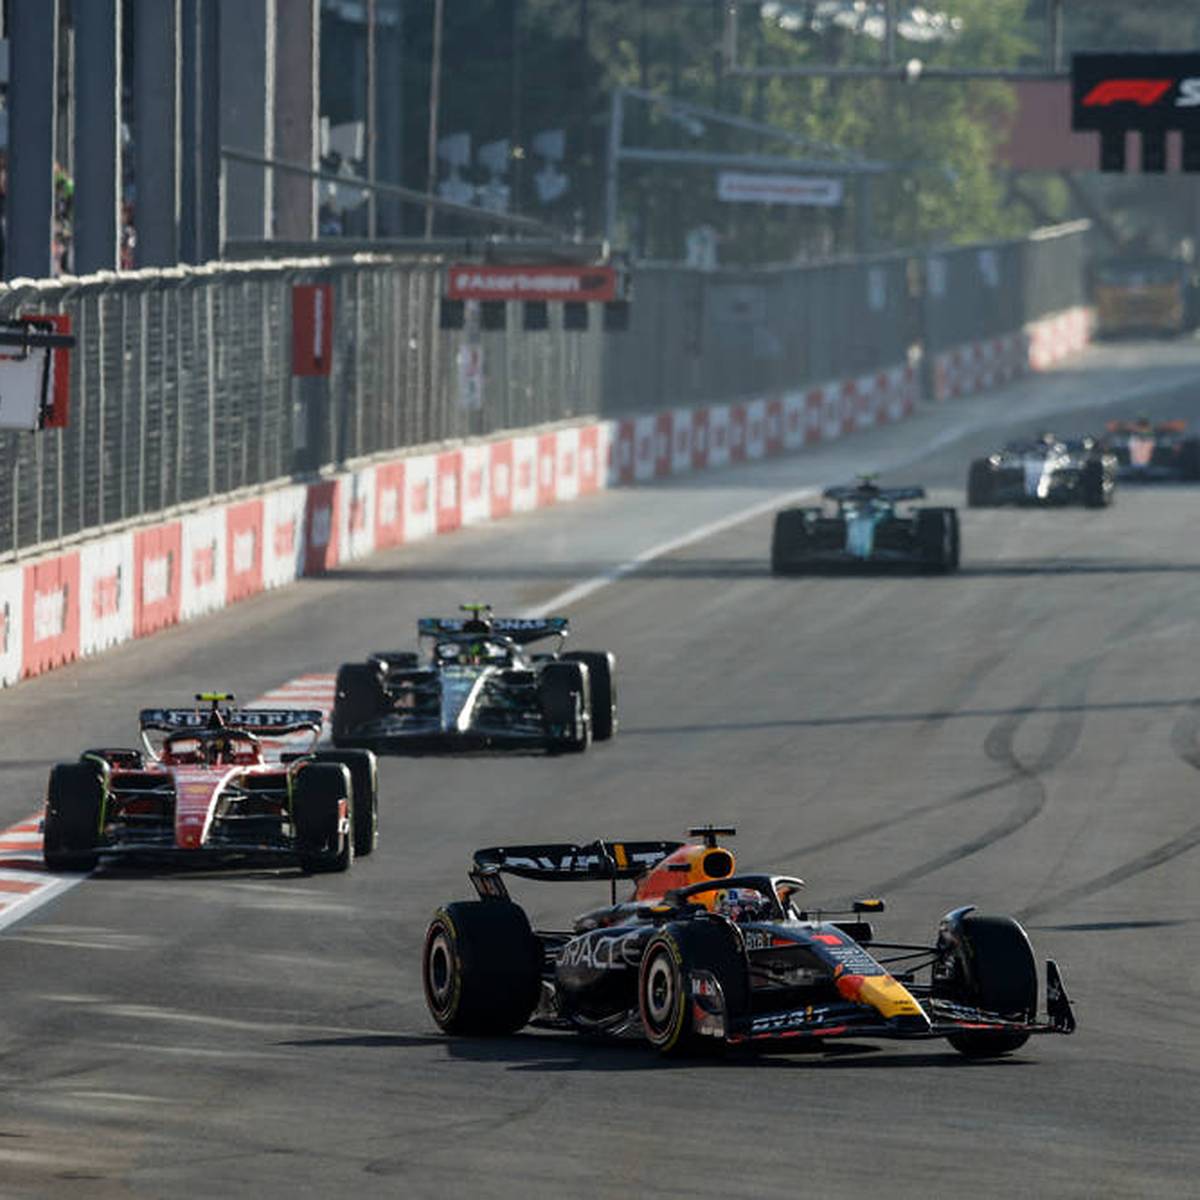 Formel 1 Rennen in Baku mit Verstappen, Leclerc, Alonso, Hamilton LIVE im TV, Stream, Ticker